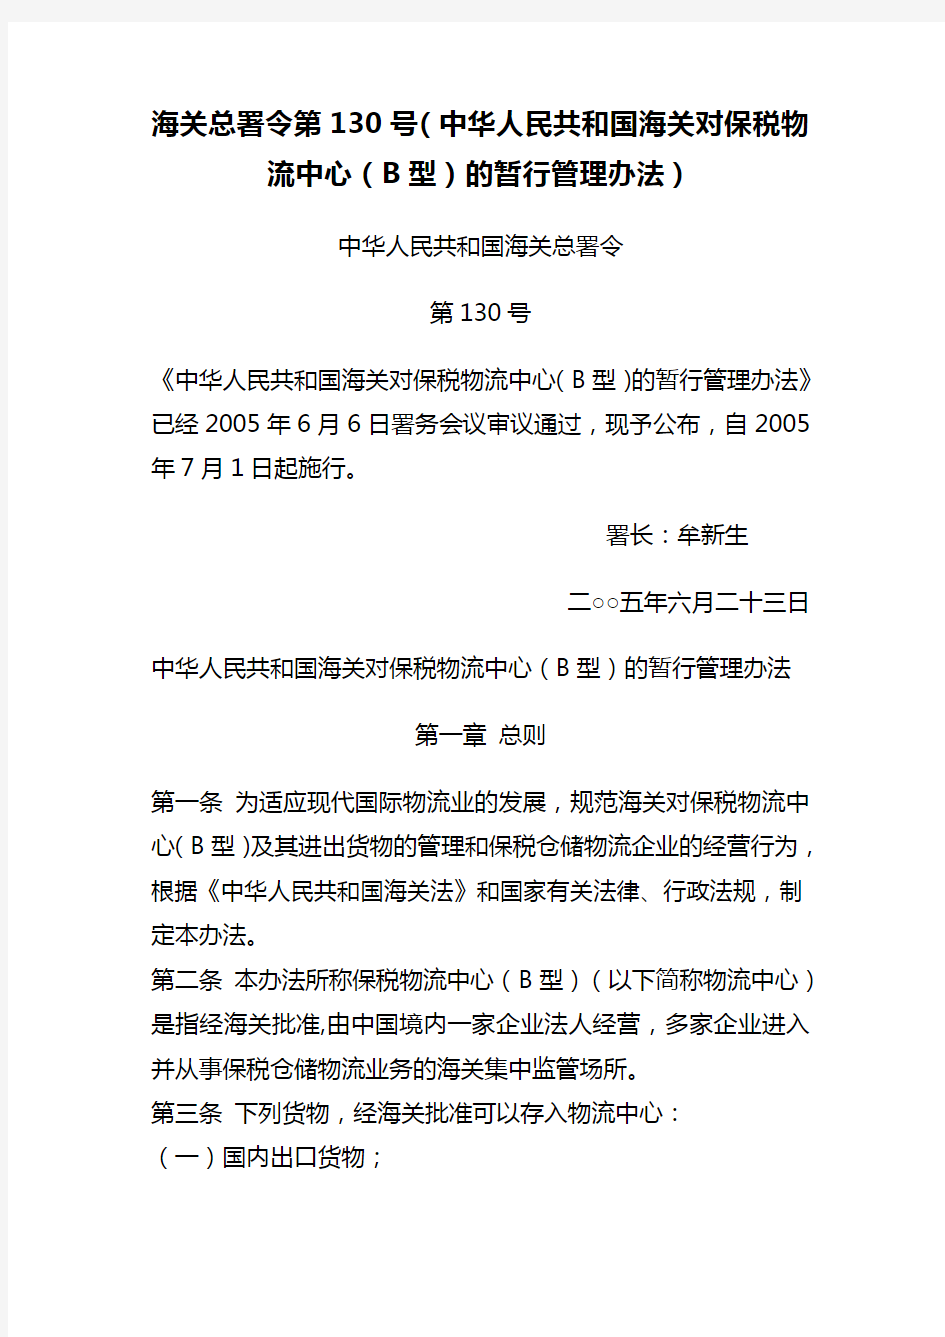 海关总署令第130号(中华人民共和国海关对保税物流中心(B型)的暂行管理办法)